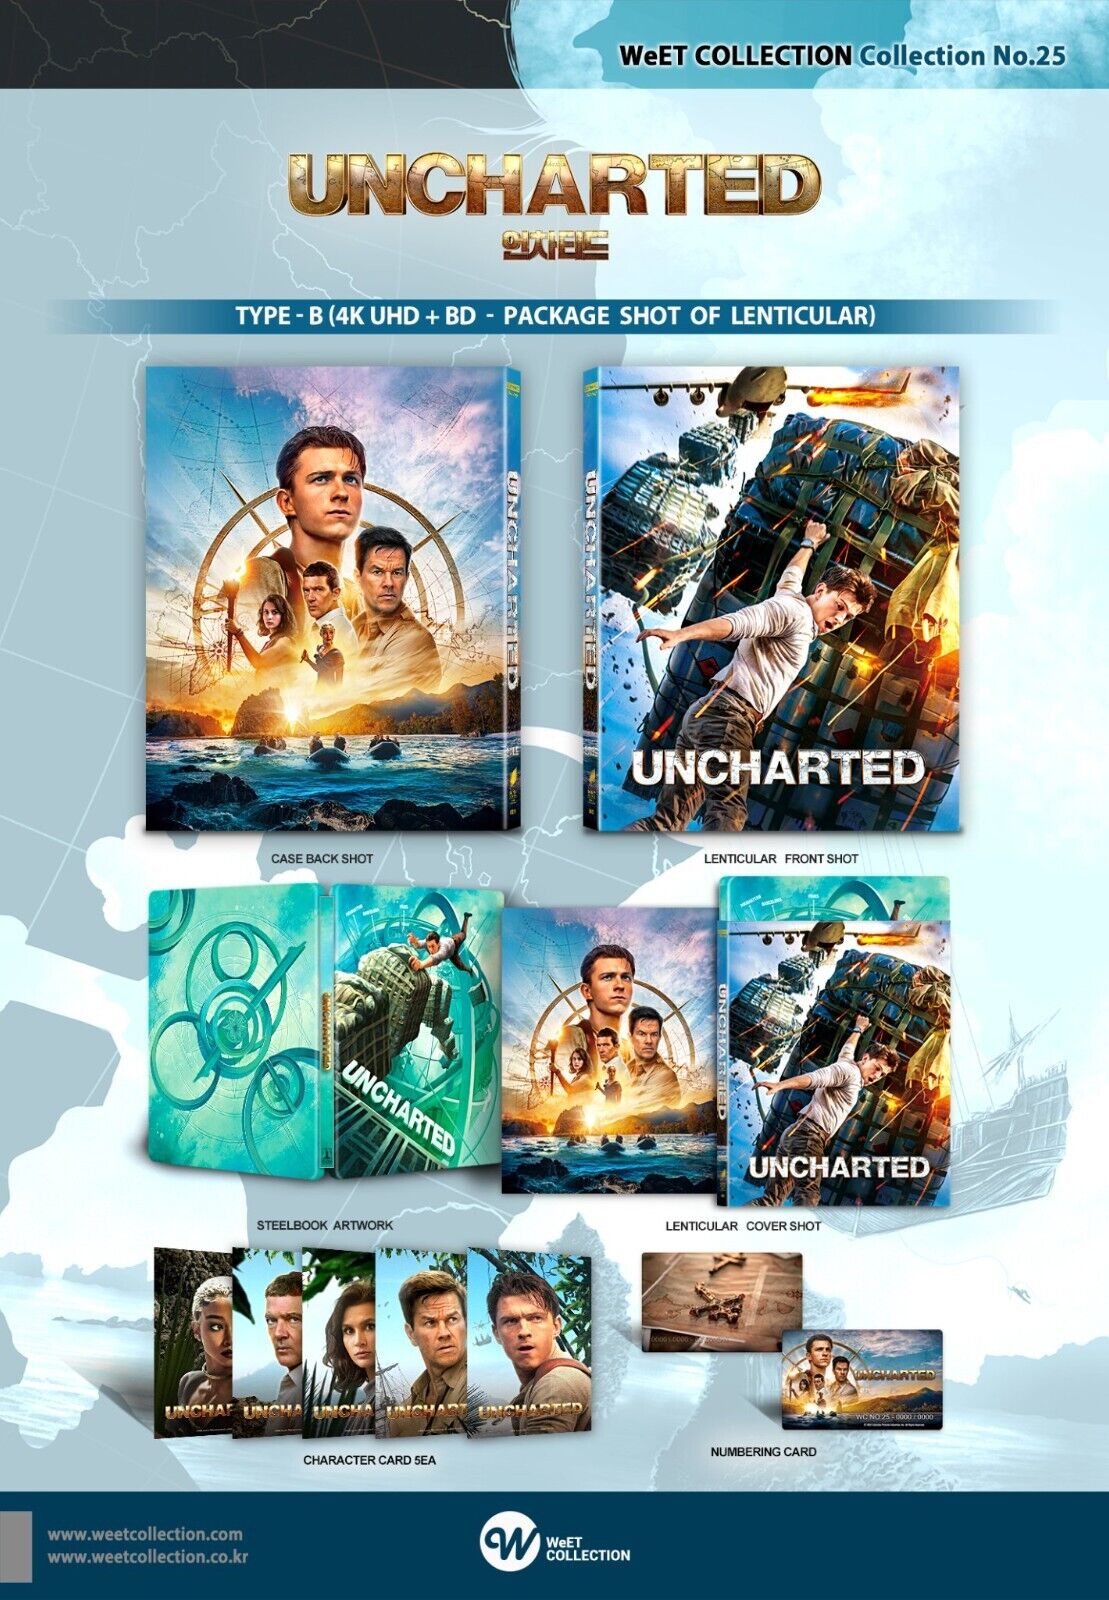 Uncharted [4K UHD] [Blu-ray]